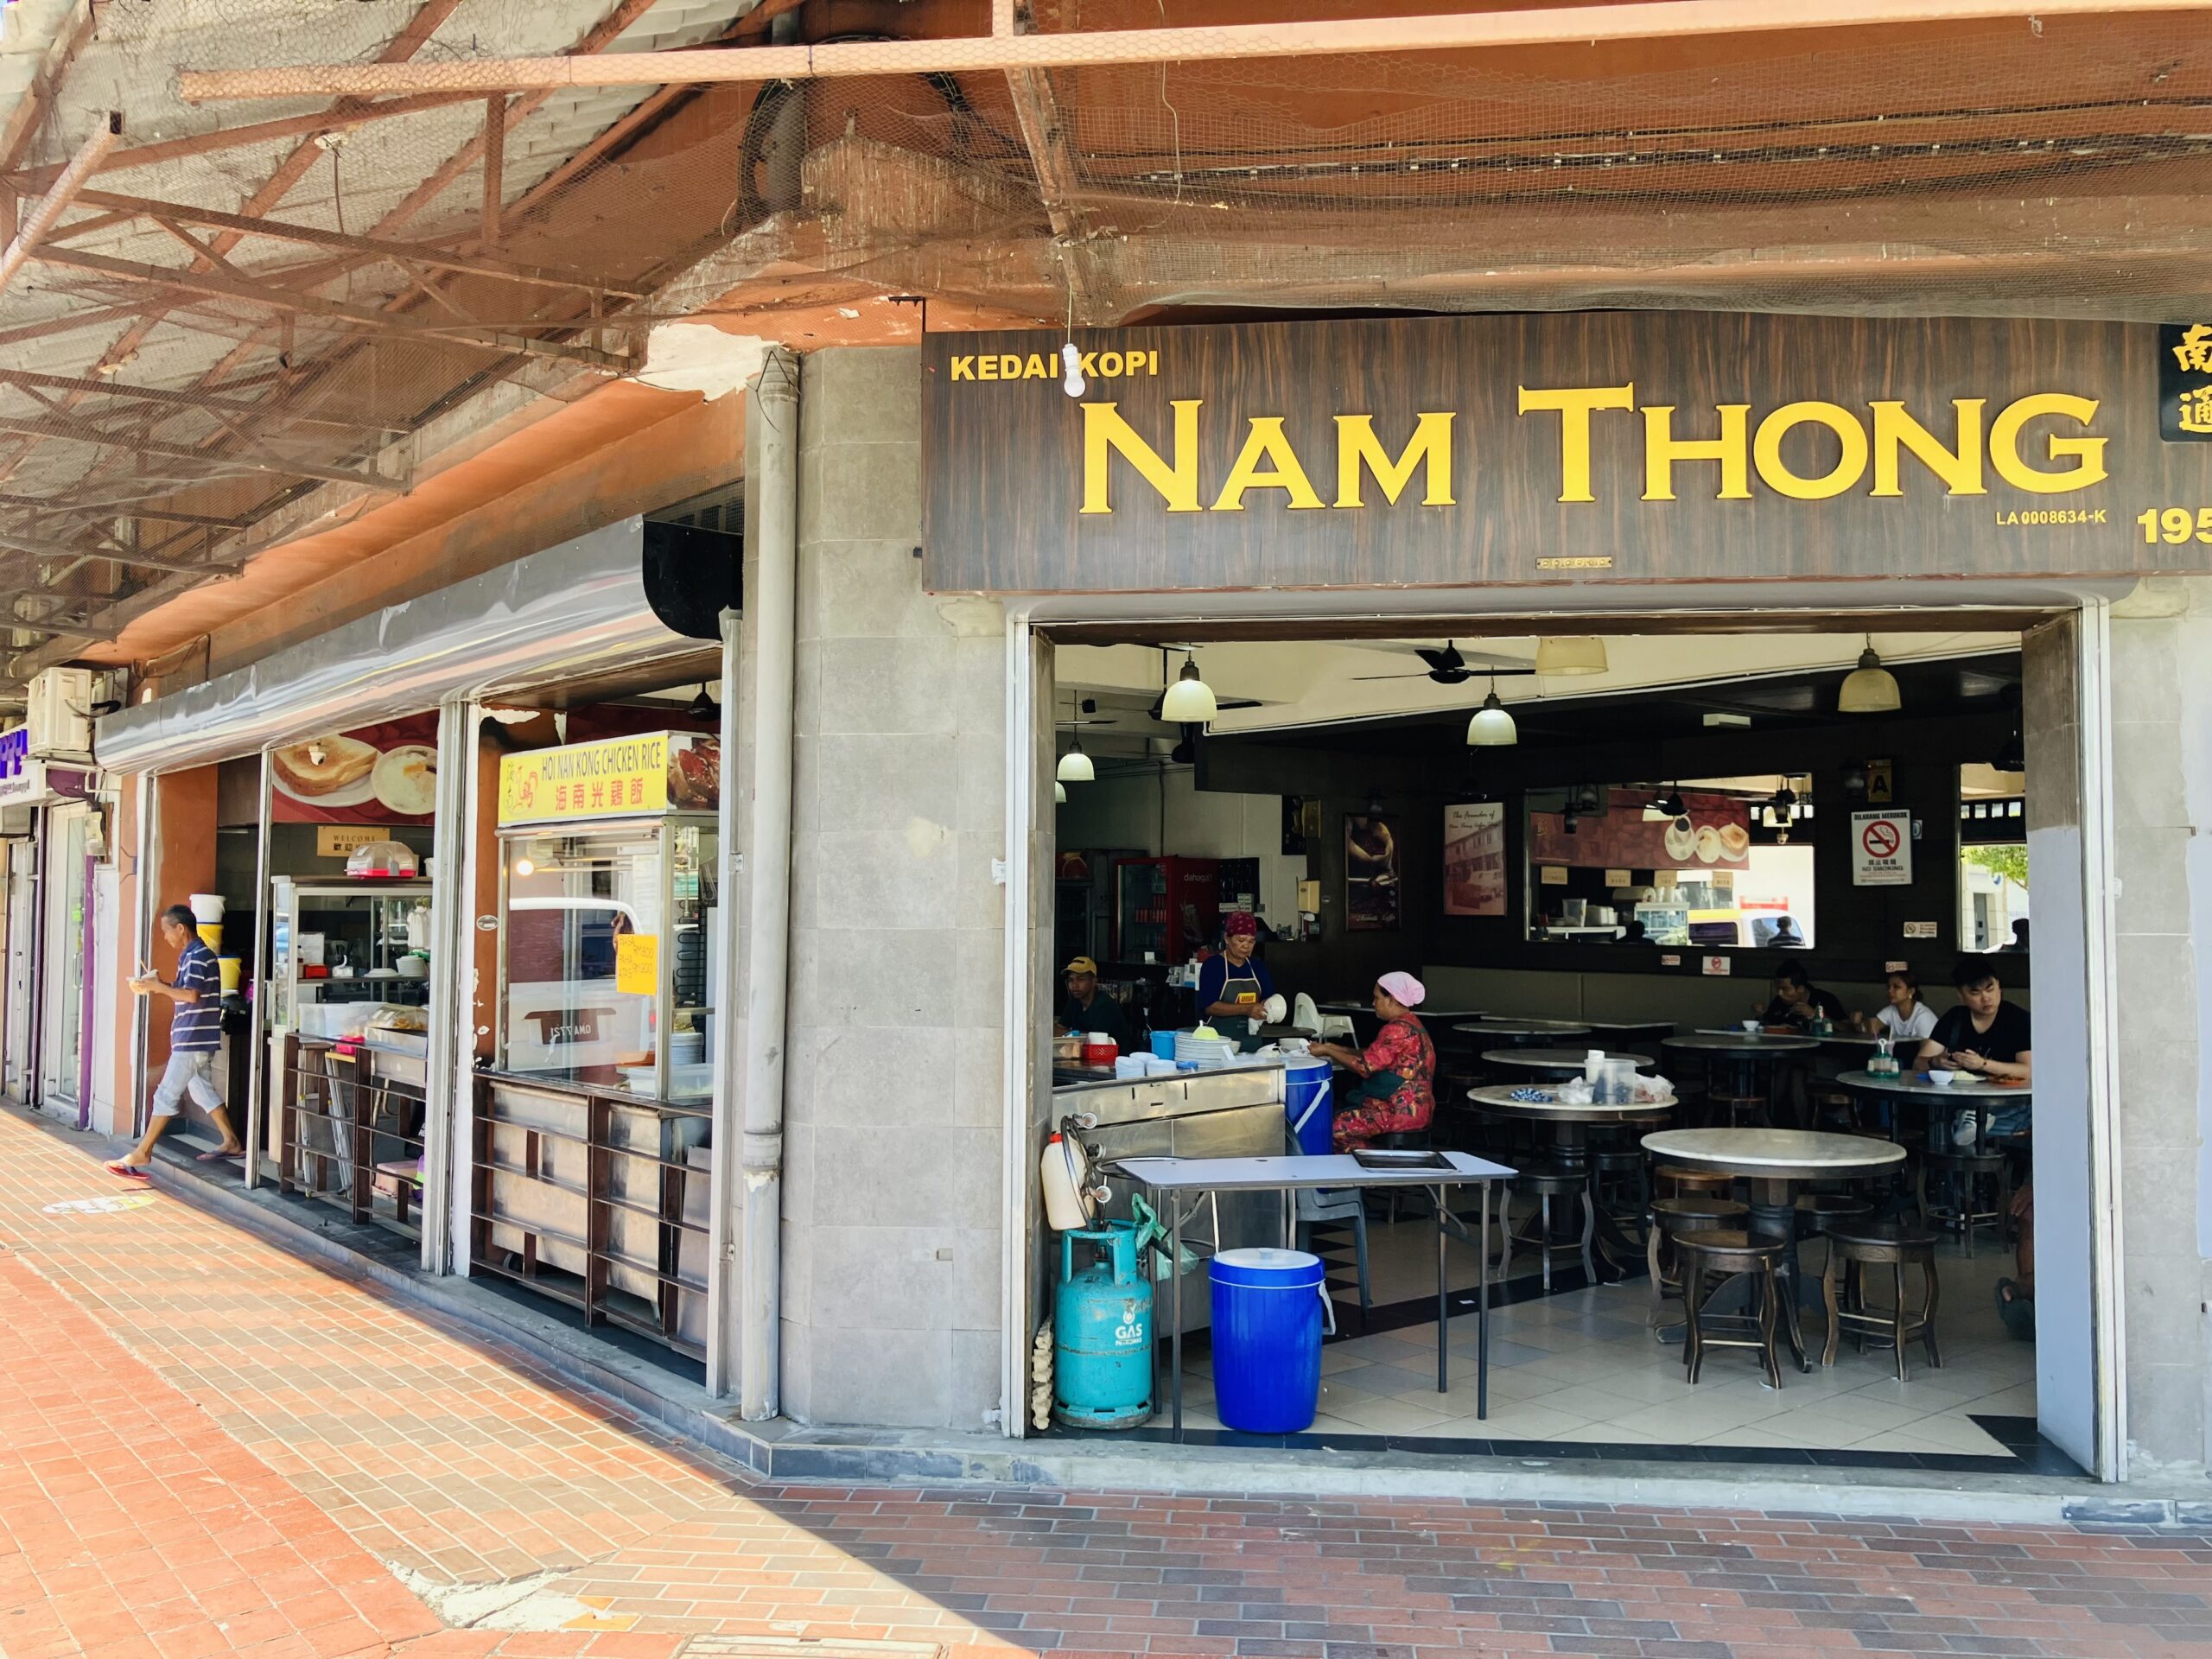 ラブアン島(Labuan)の南通茶屋(Kedai kopi Nam Thong)